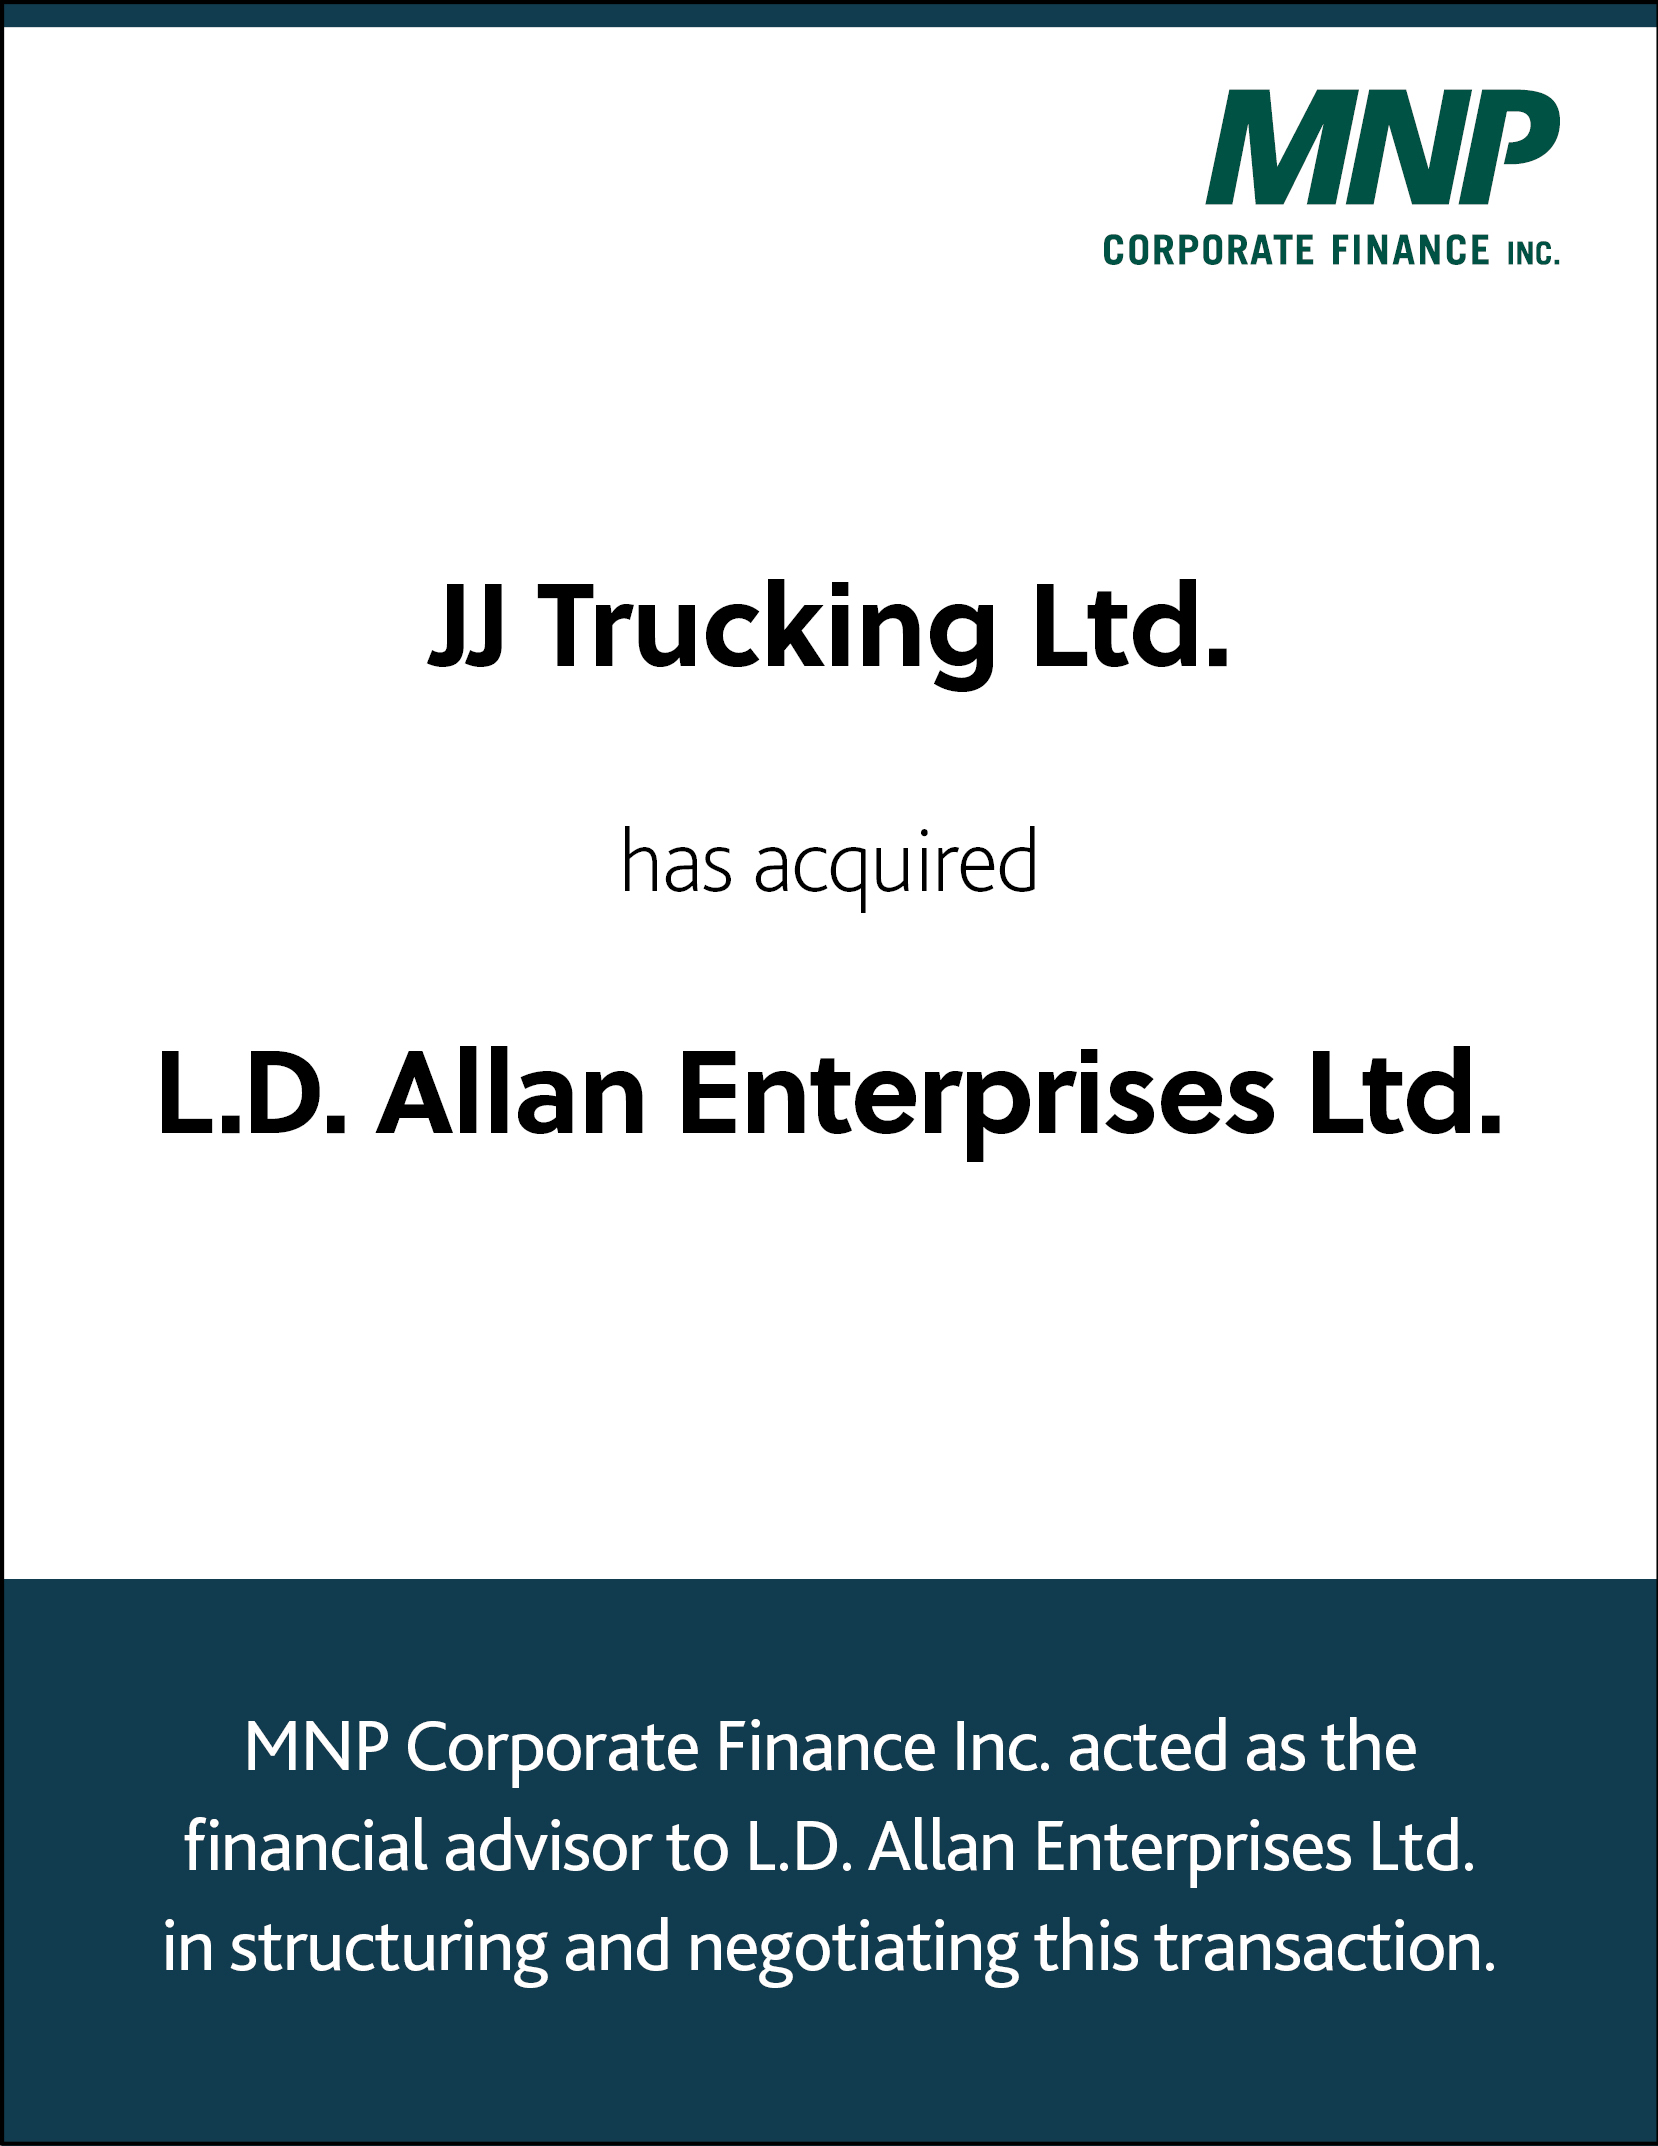 JJ Trucking Ltd has acquired L.D. Allan Enterprises Ltd. 